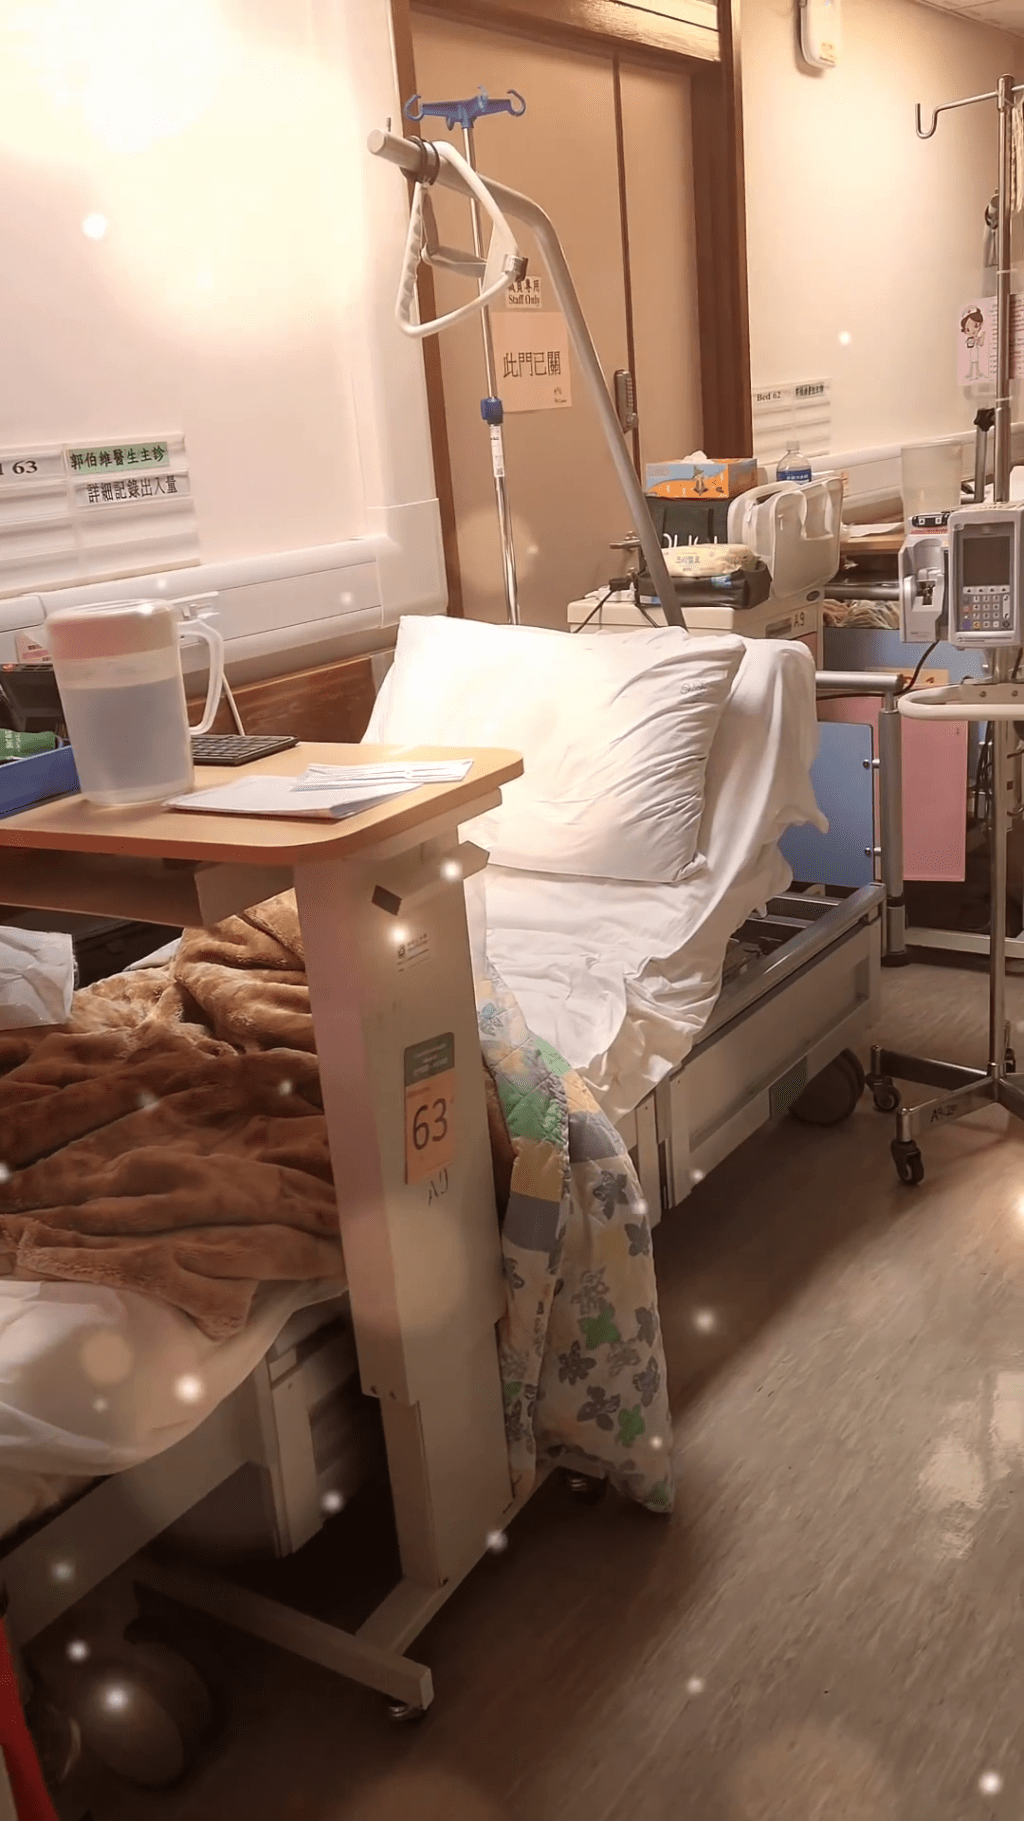 文頌男曾獲安排的病床疑似在走廊位置。